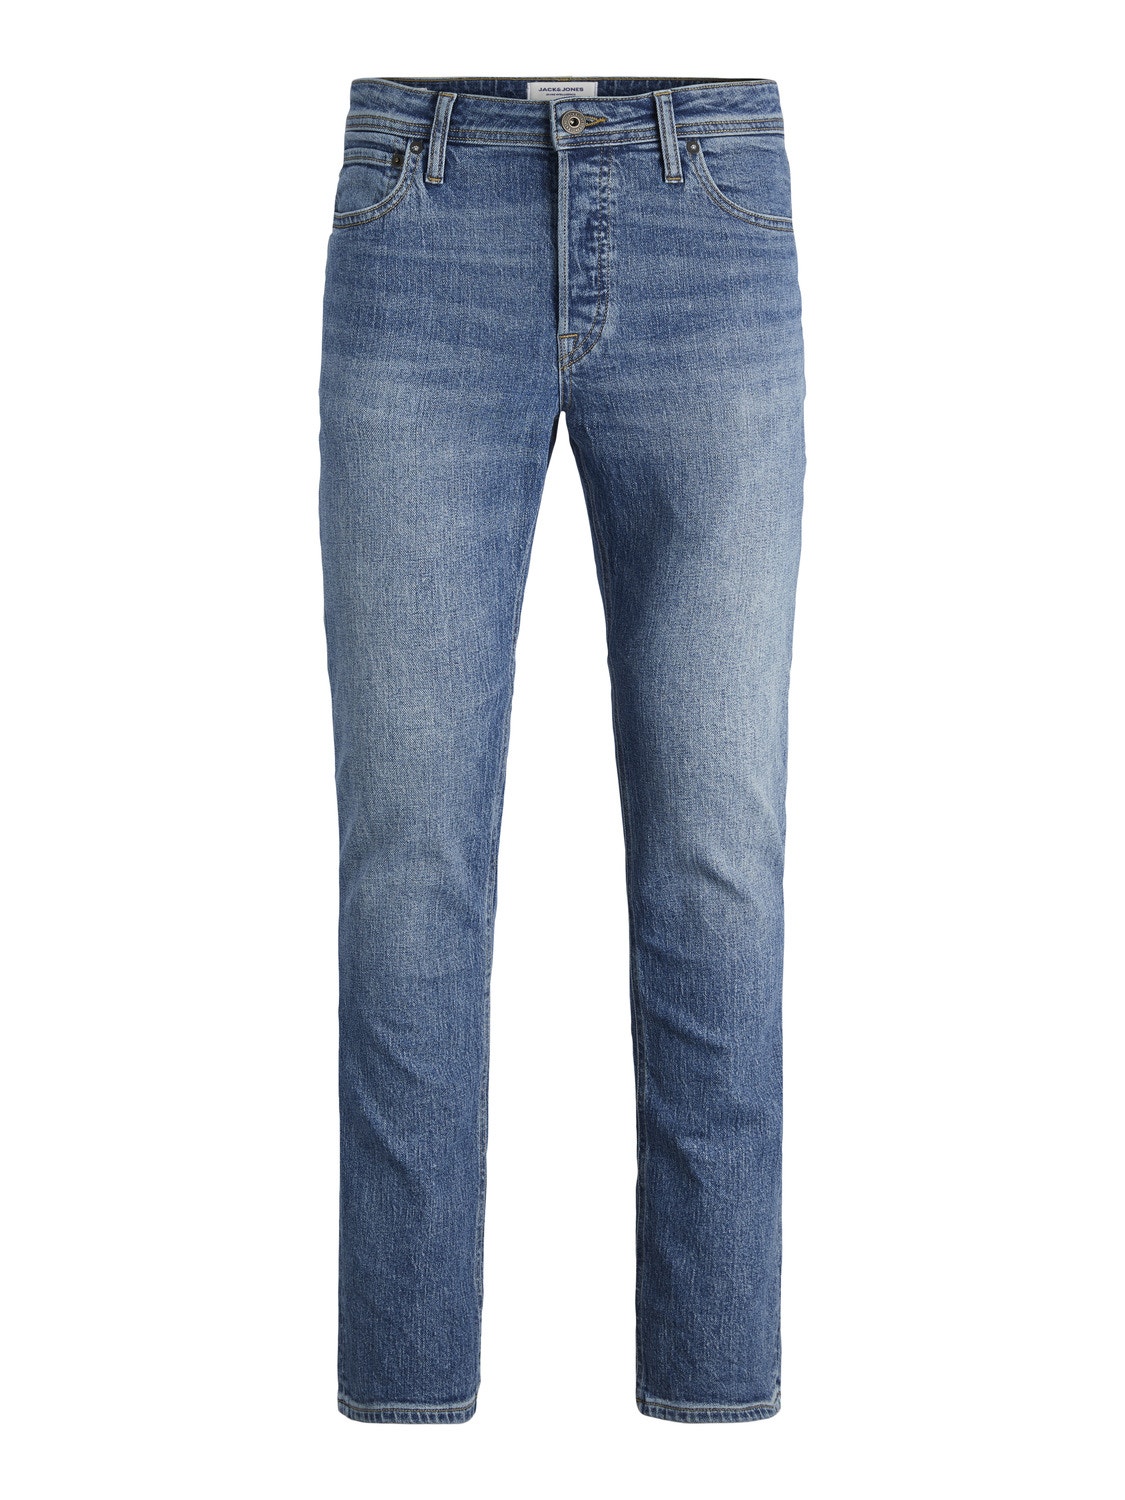 Jack & Jones JJITIM JJORIGINAL AM 441 Slim Fit jeans mit geradem Bein -Blue Denim - 12249062